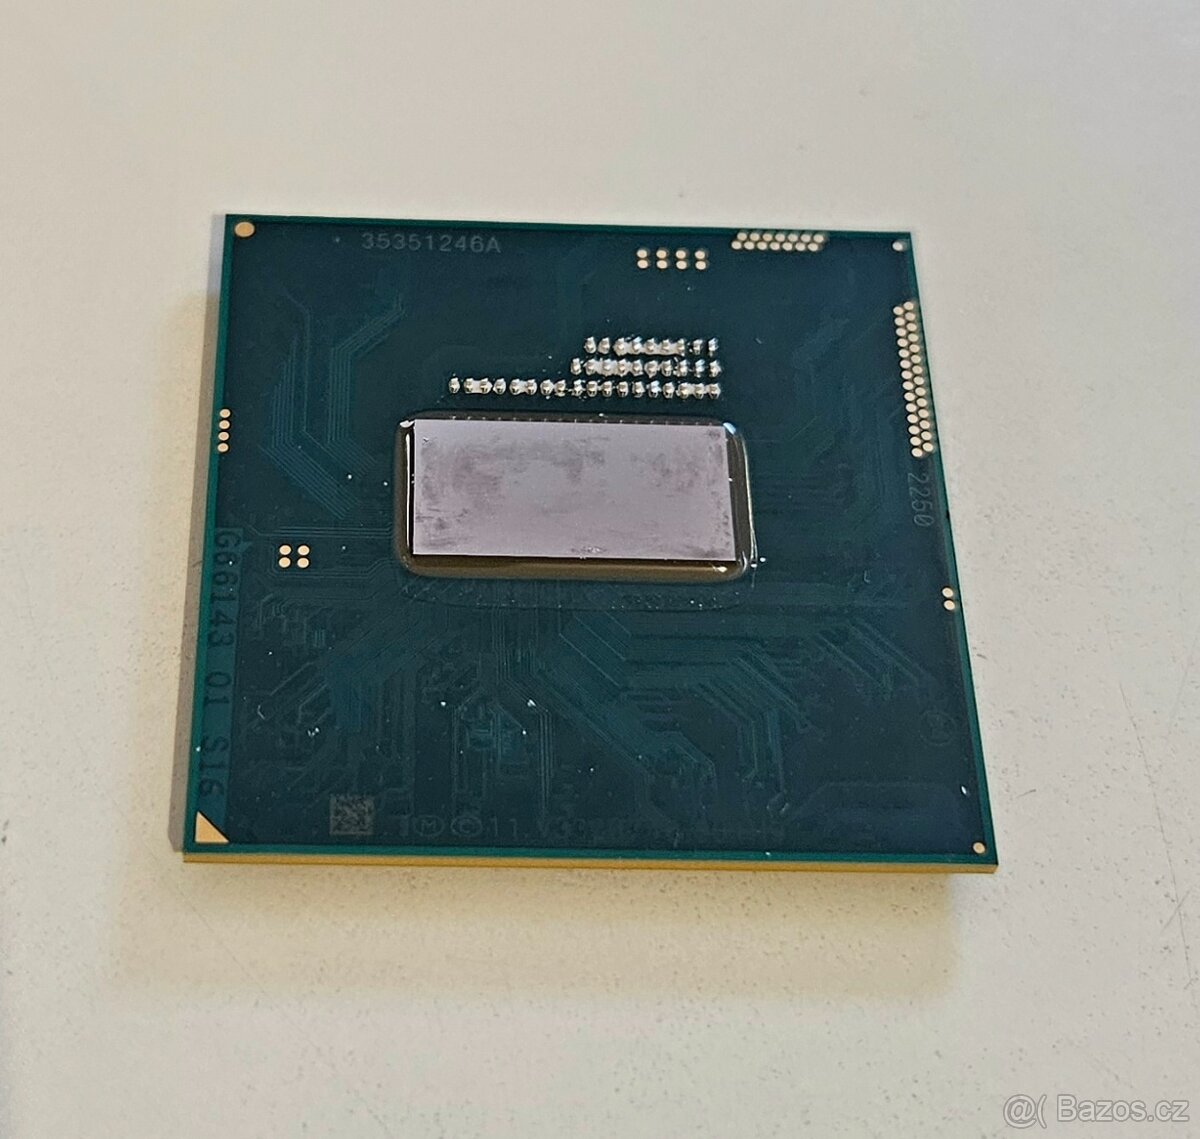 Intel i5-4300M G3, SR1H9, 2.6-3.3GHz, 3MB notebookový